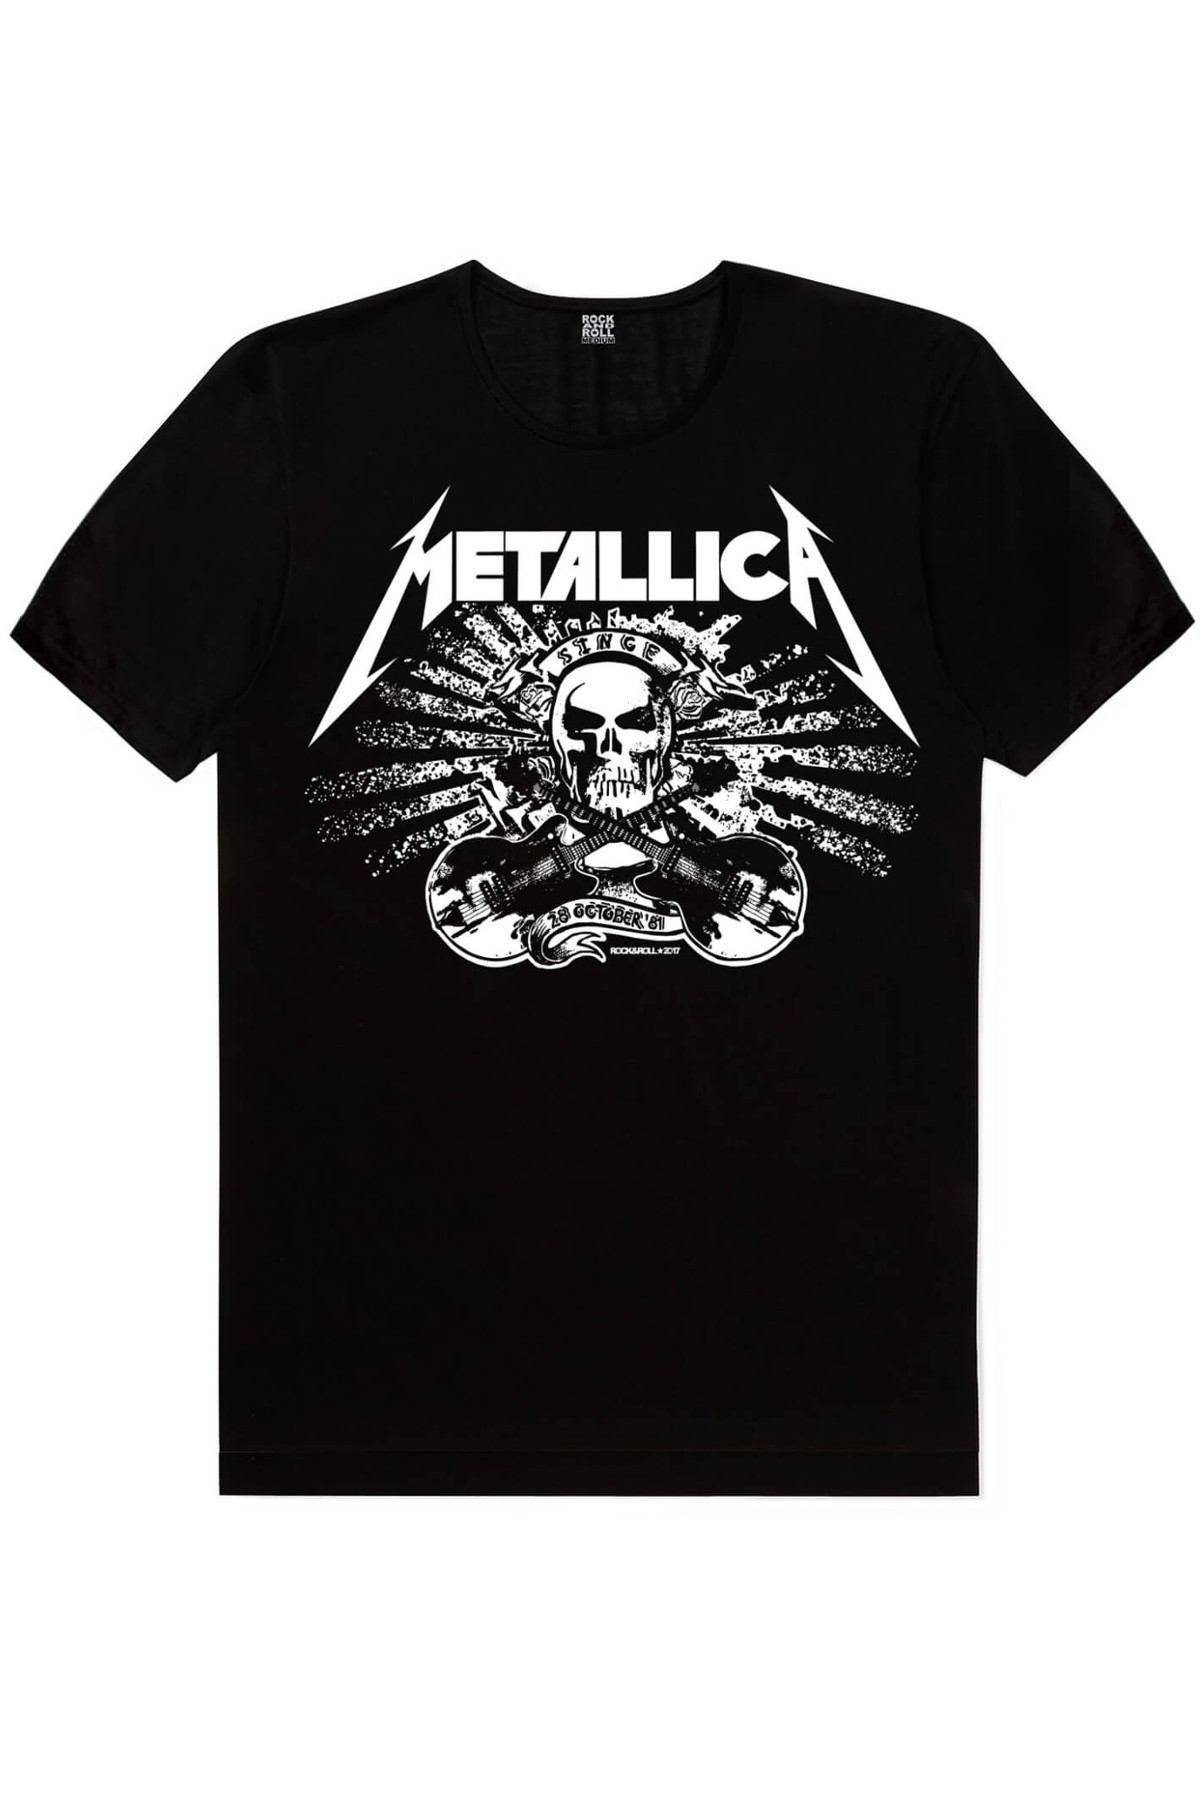 Metallica Kurukafa, Hızlı Yaşa Çocuk Tişört 2'li Eko Paket